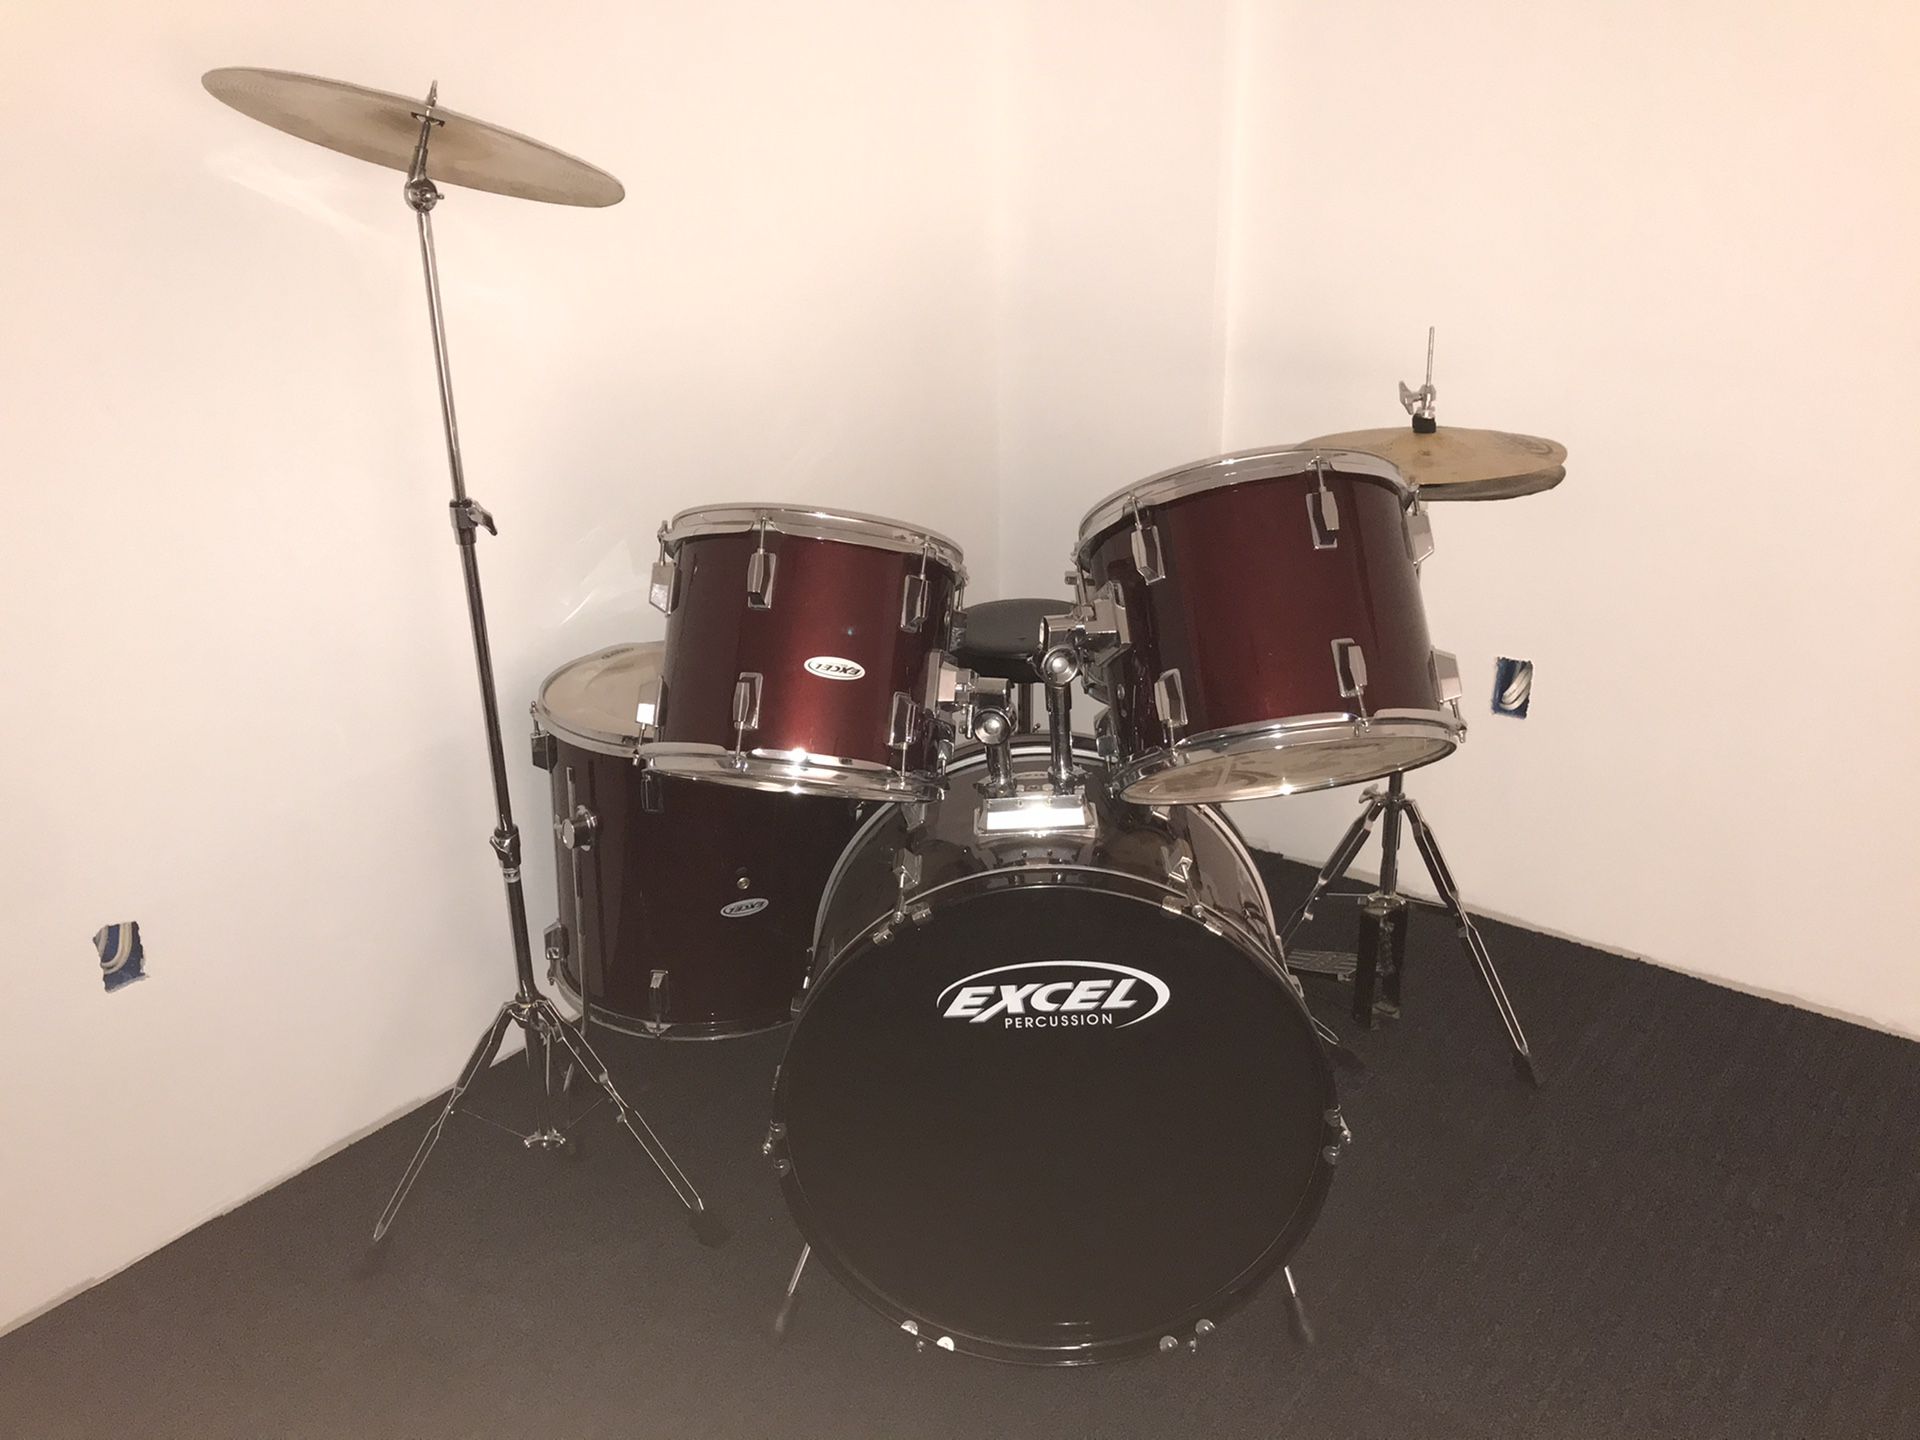 Excel percussion drum set